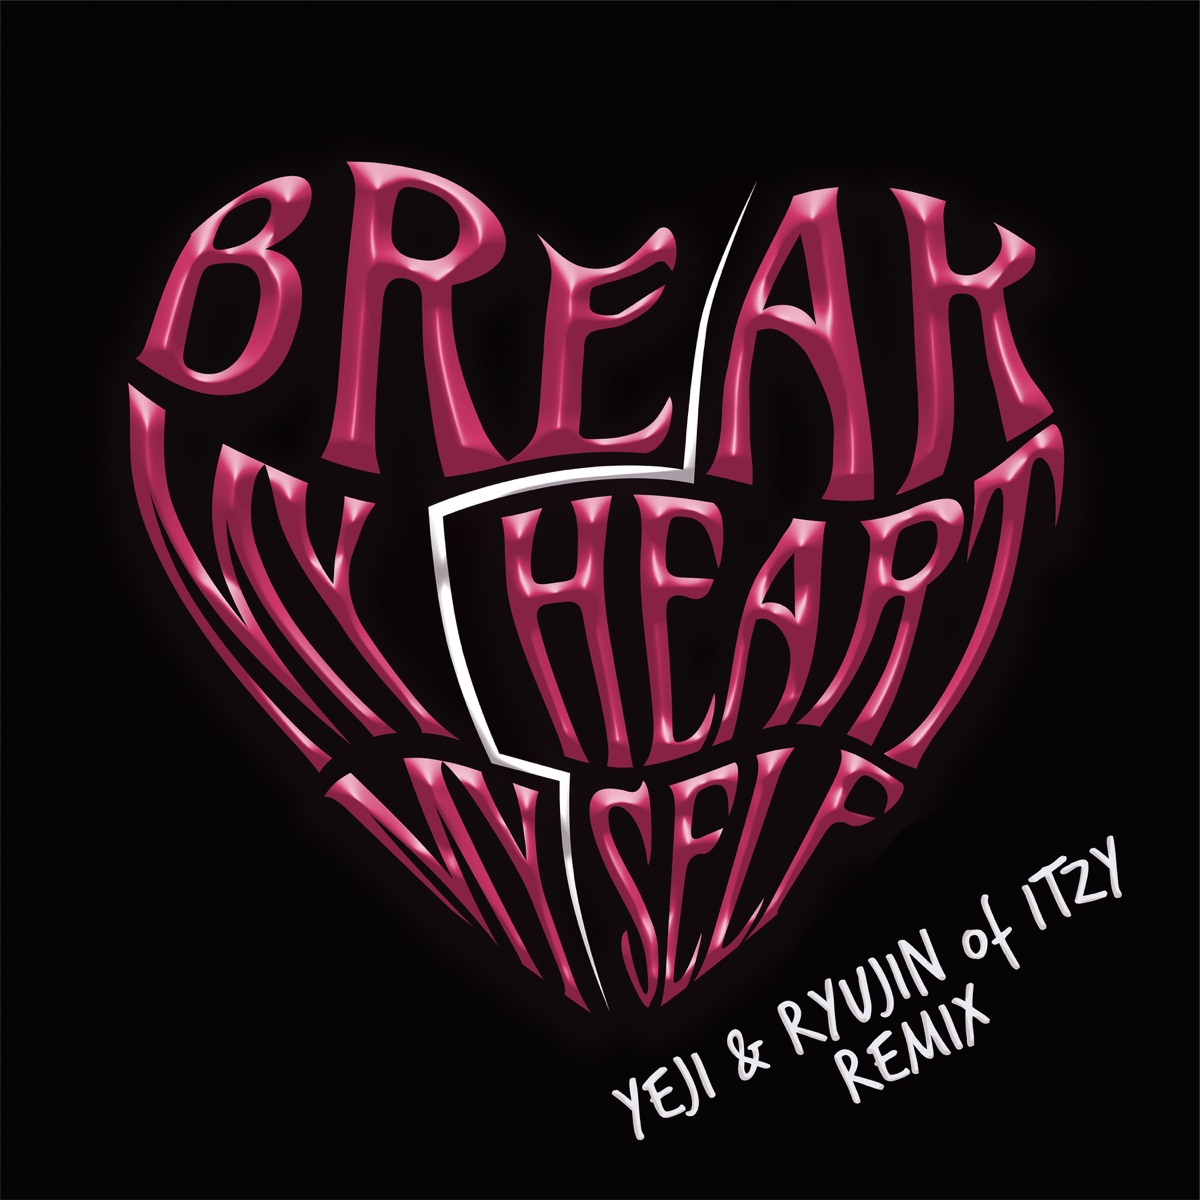 Cover art for『Bebe Rexha - Break My Heart Myself (feat. YEJI & RYUJIN of ITZY)』from the release『Break My Heart Myself (feat. YEJI & RYUJIN of ITZY)